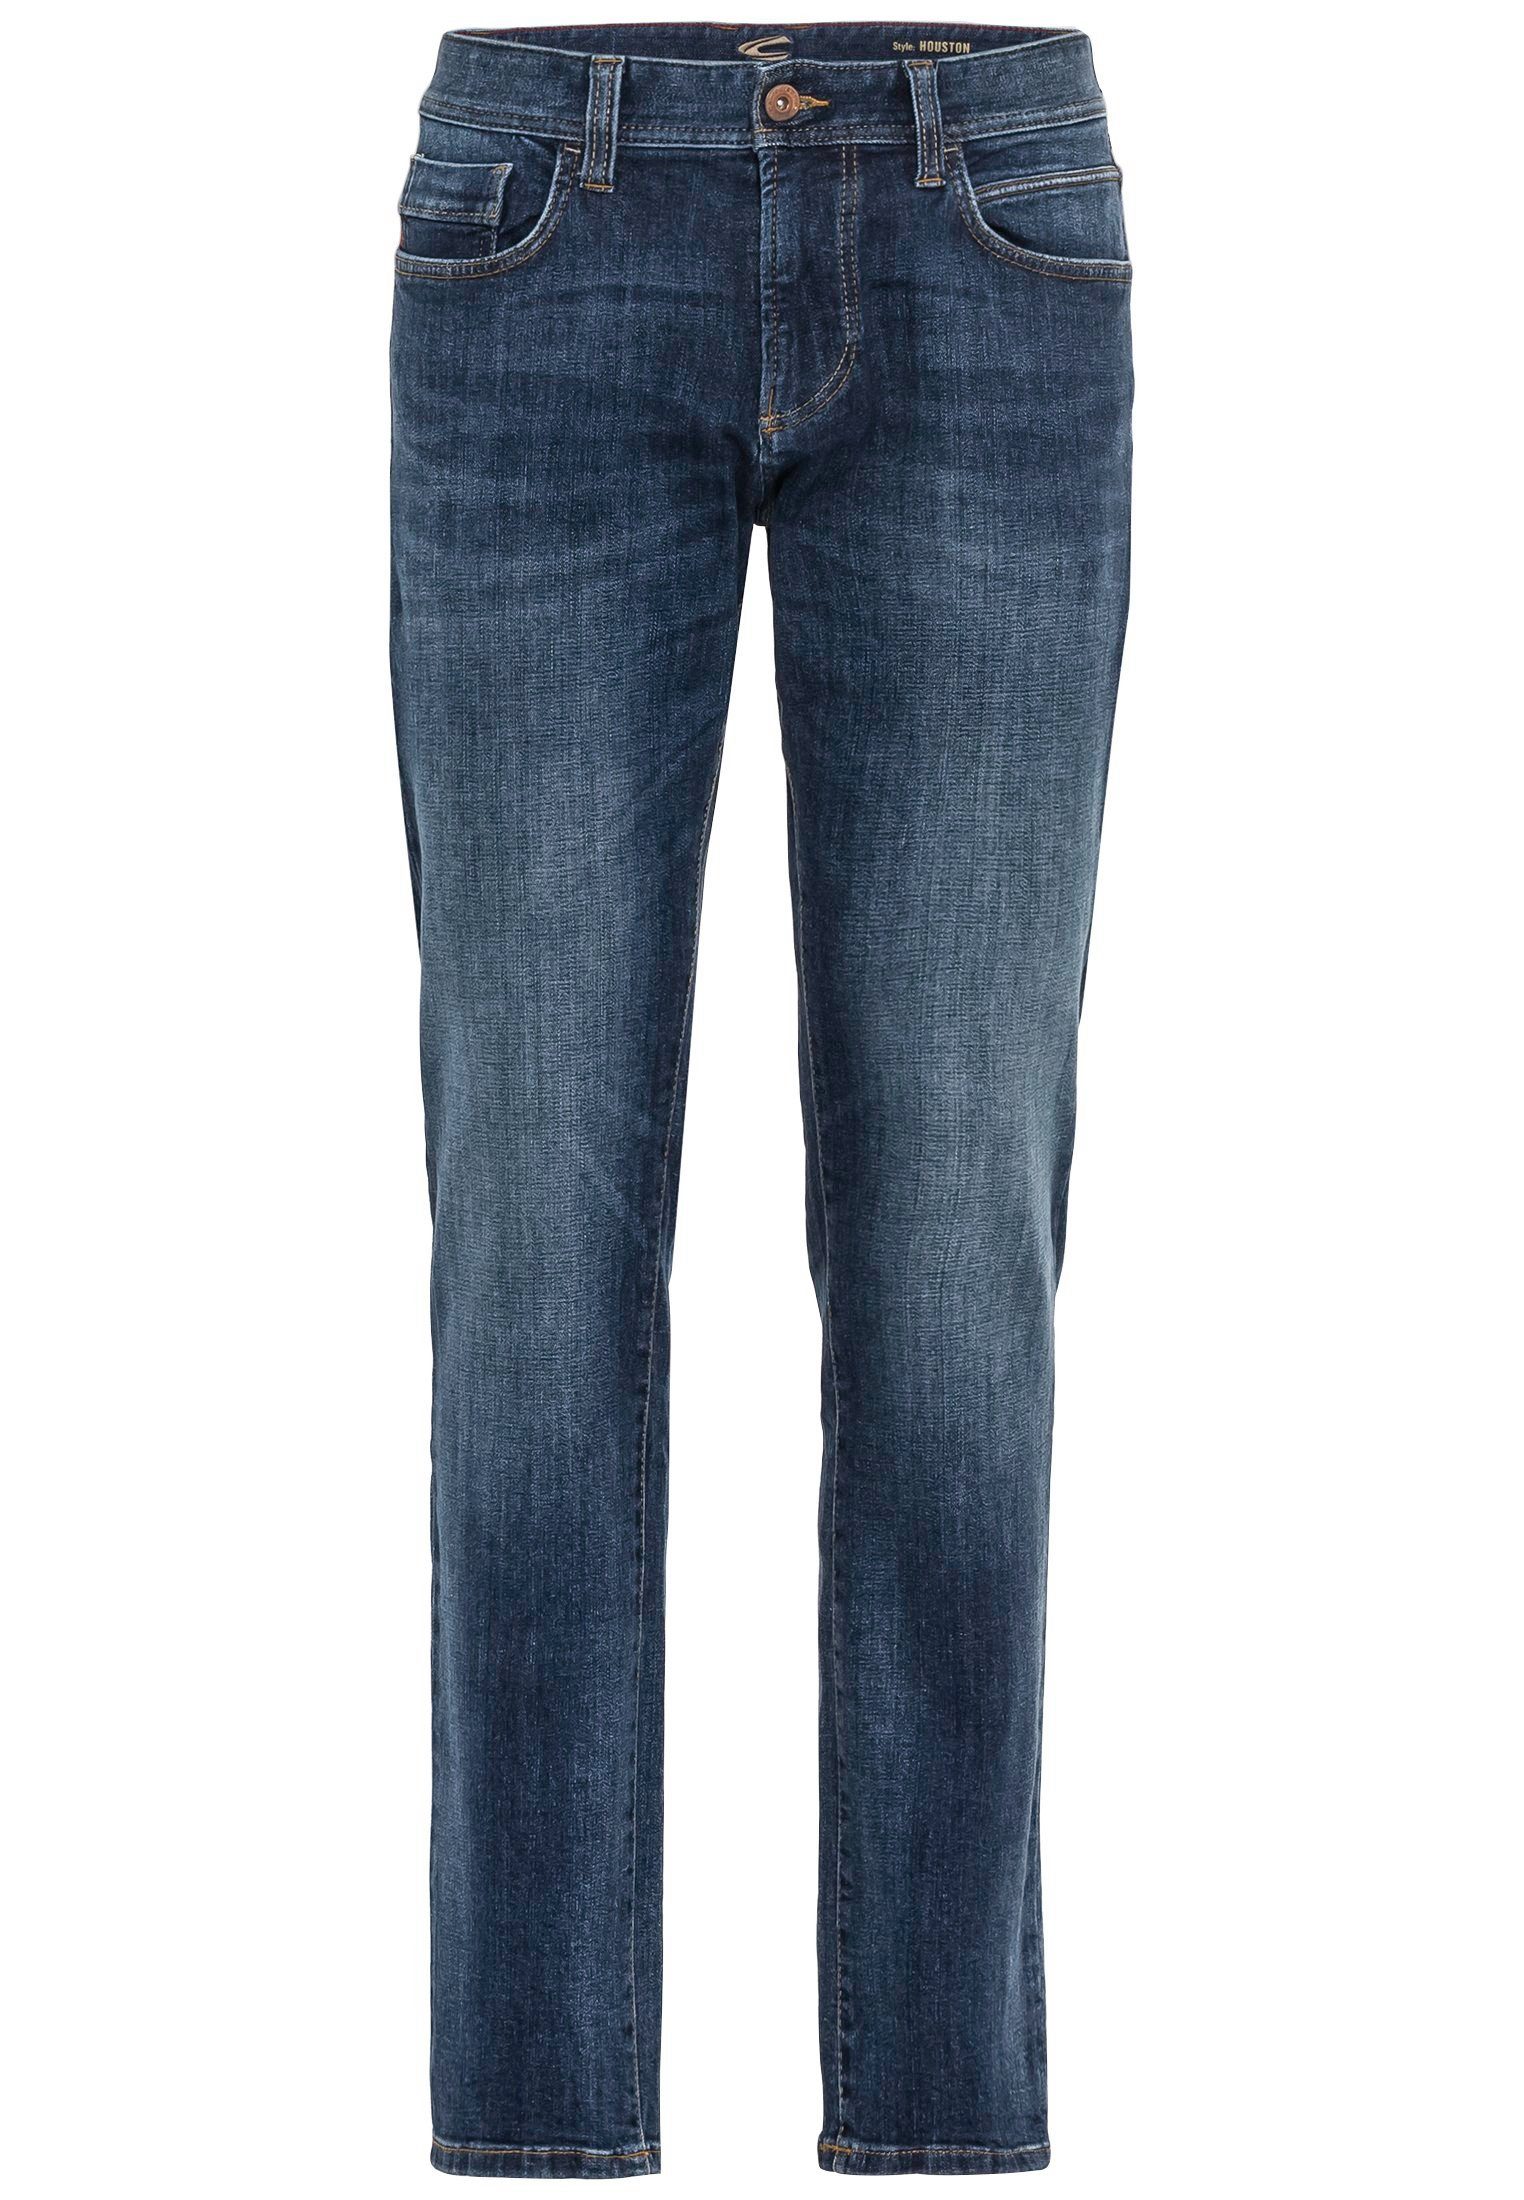 camel active 5-Pocket-Jeans Herren Jeans 5-POCKET HOUSTON indigo